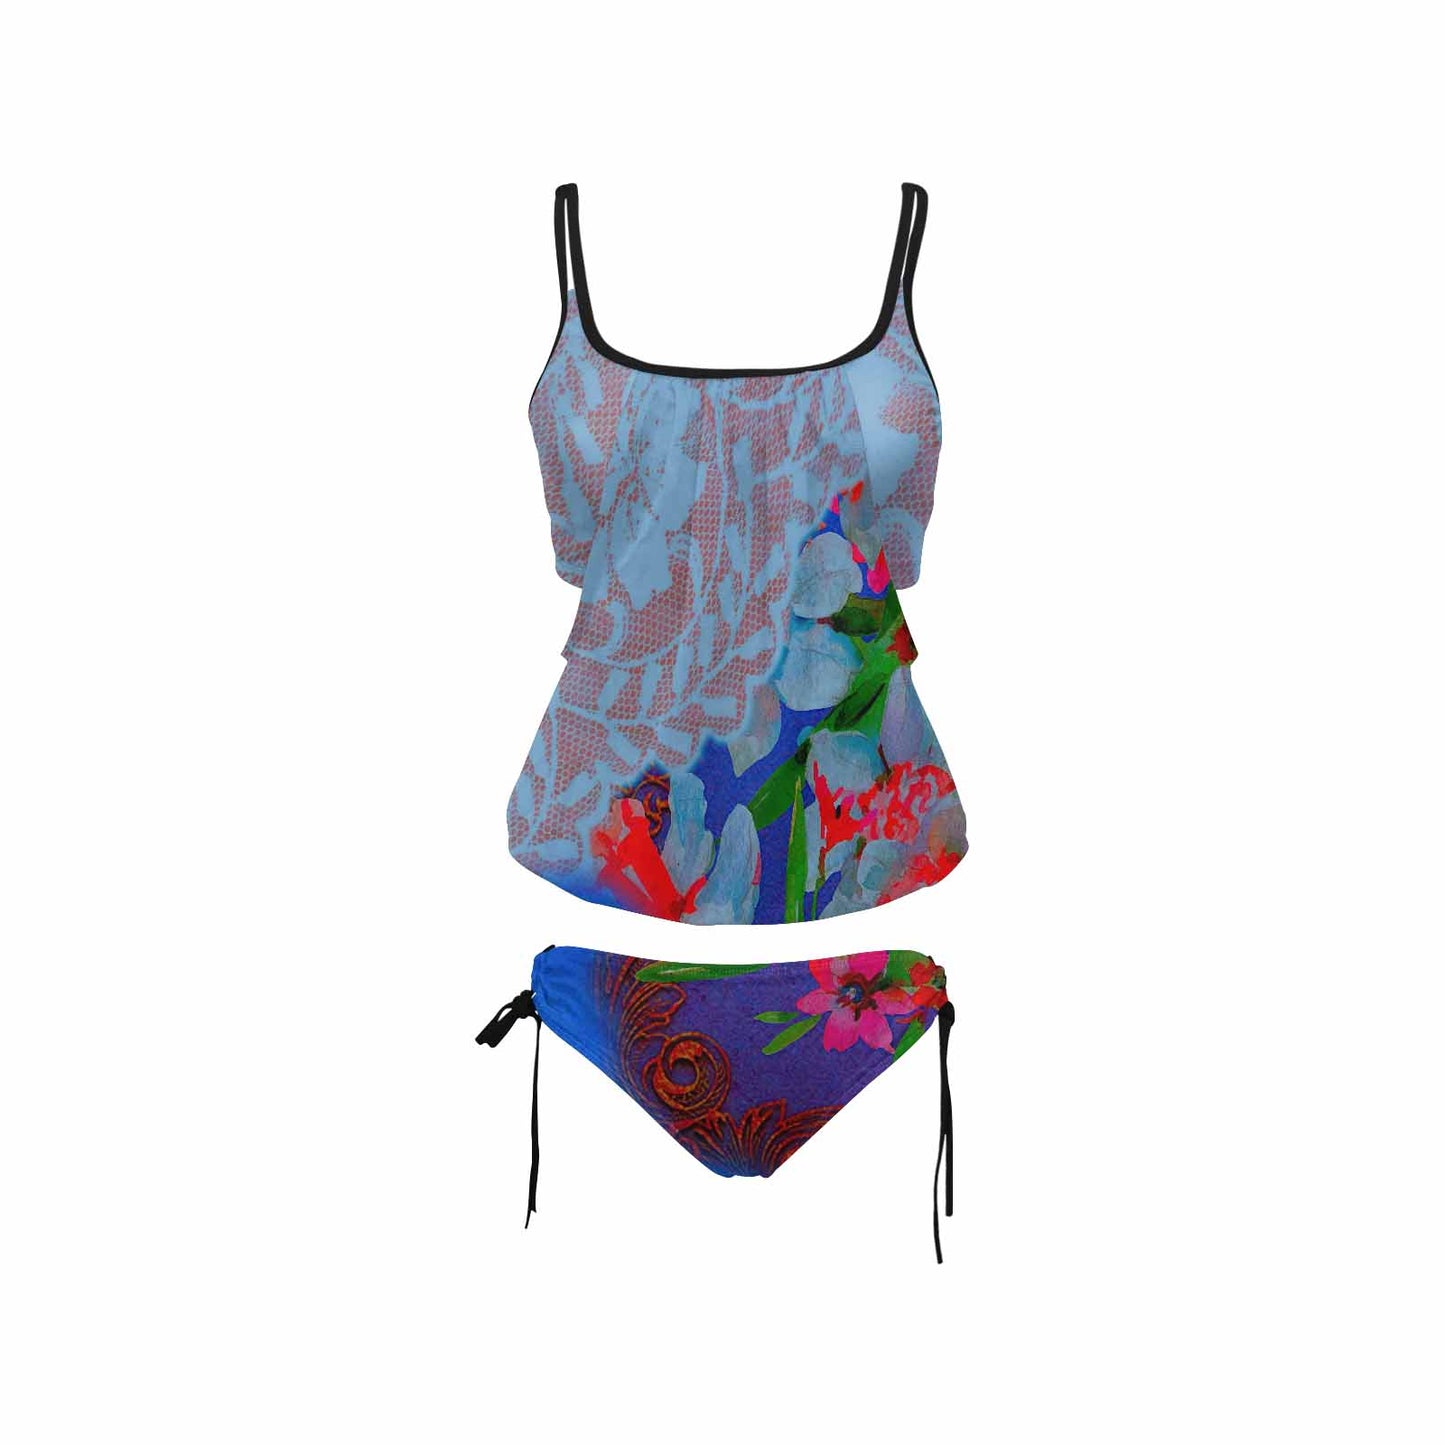 Tankini cover belly swim wear, Printed Victorian lace design 46